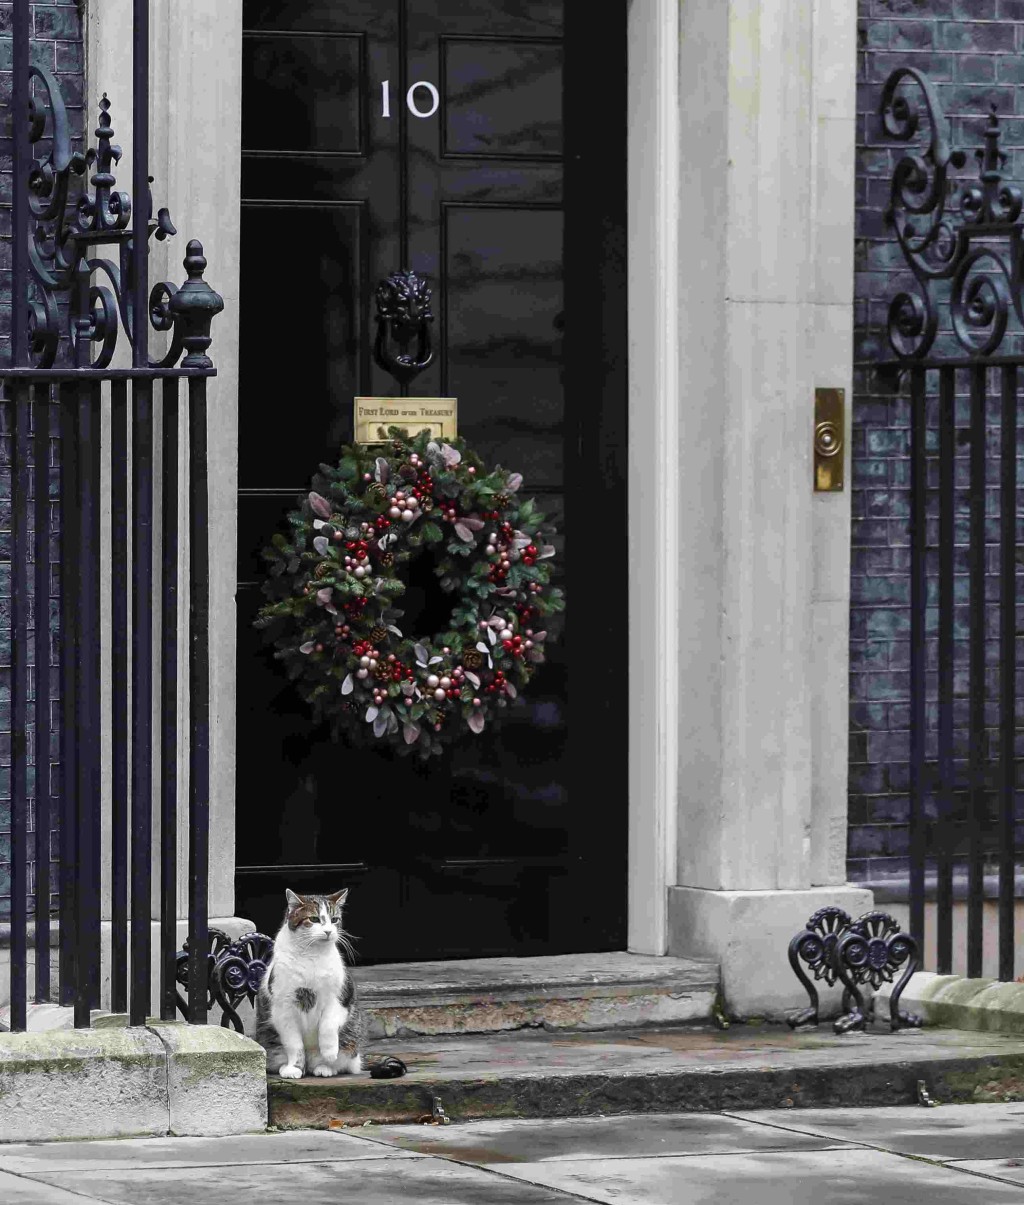 英國倫敦首相府的「首席捕鼠官」拉里站在唐寧街10號門前。